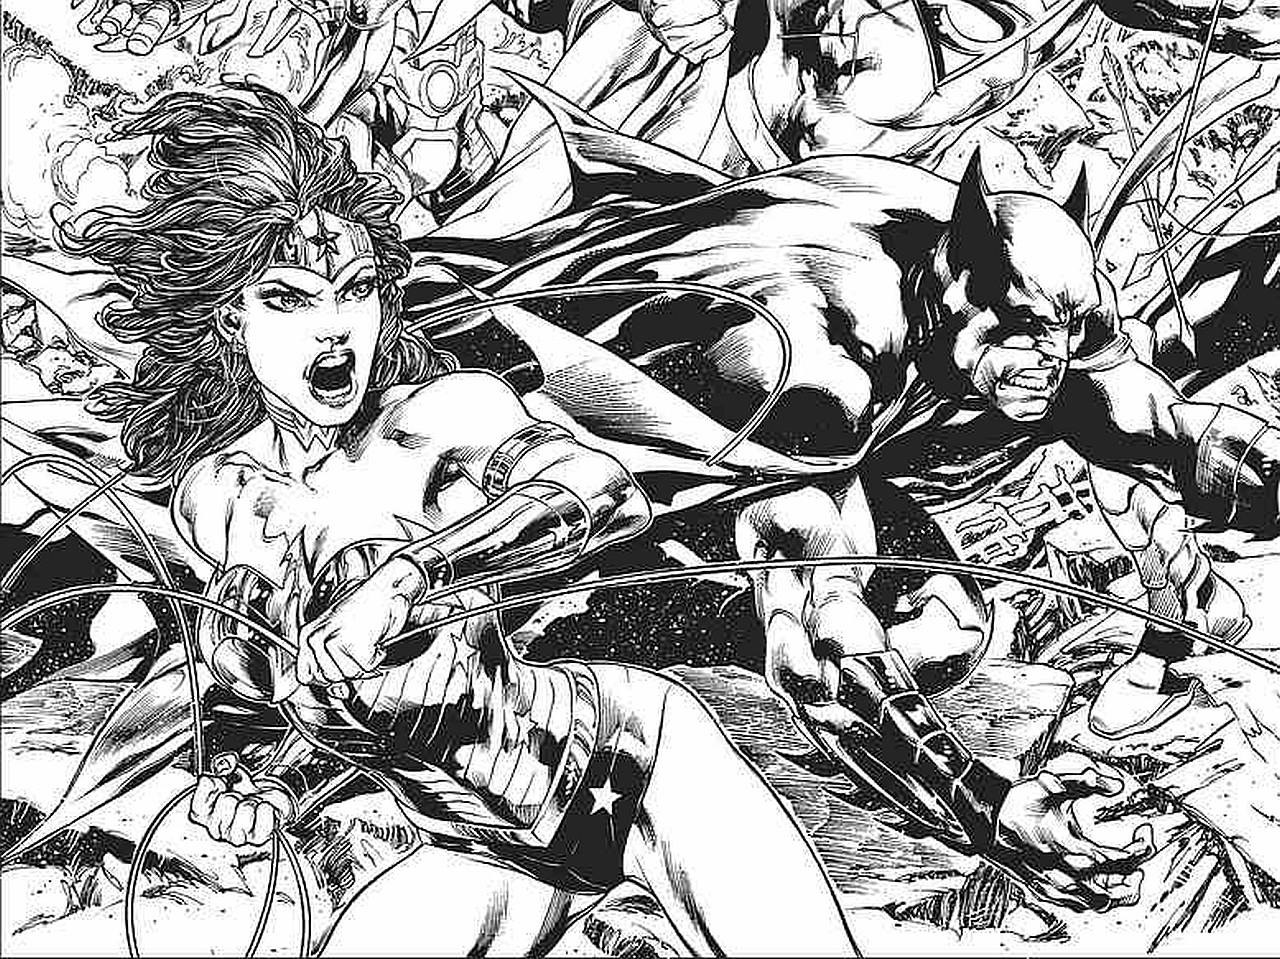 Скачать обои бесплатно Комиксы, Бэтмен, Лига Справедливости Америки, Удивительная Женщина картинка на рабочий стол ПК